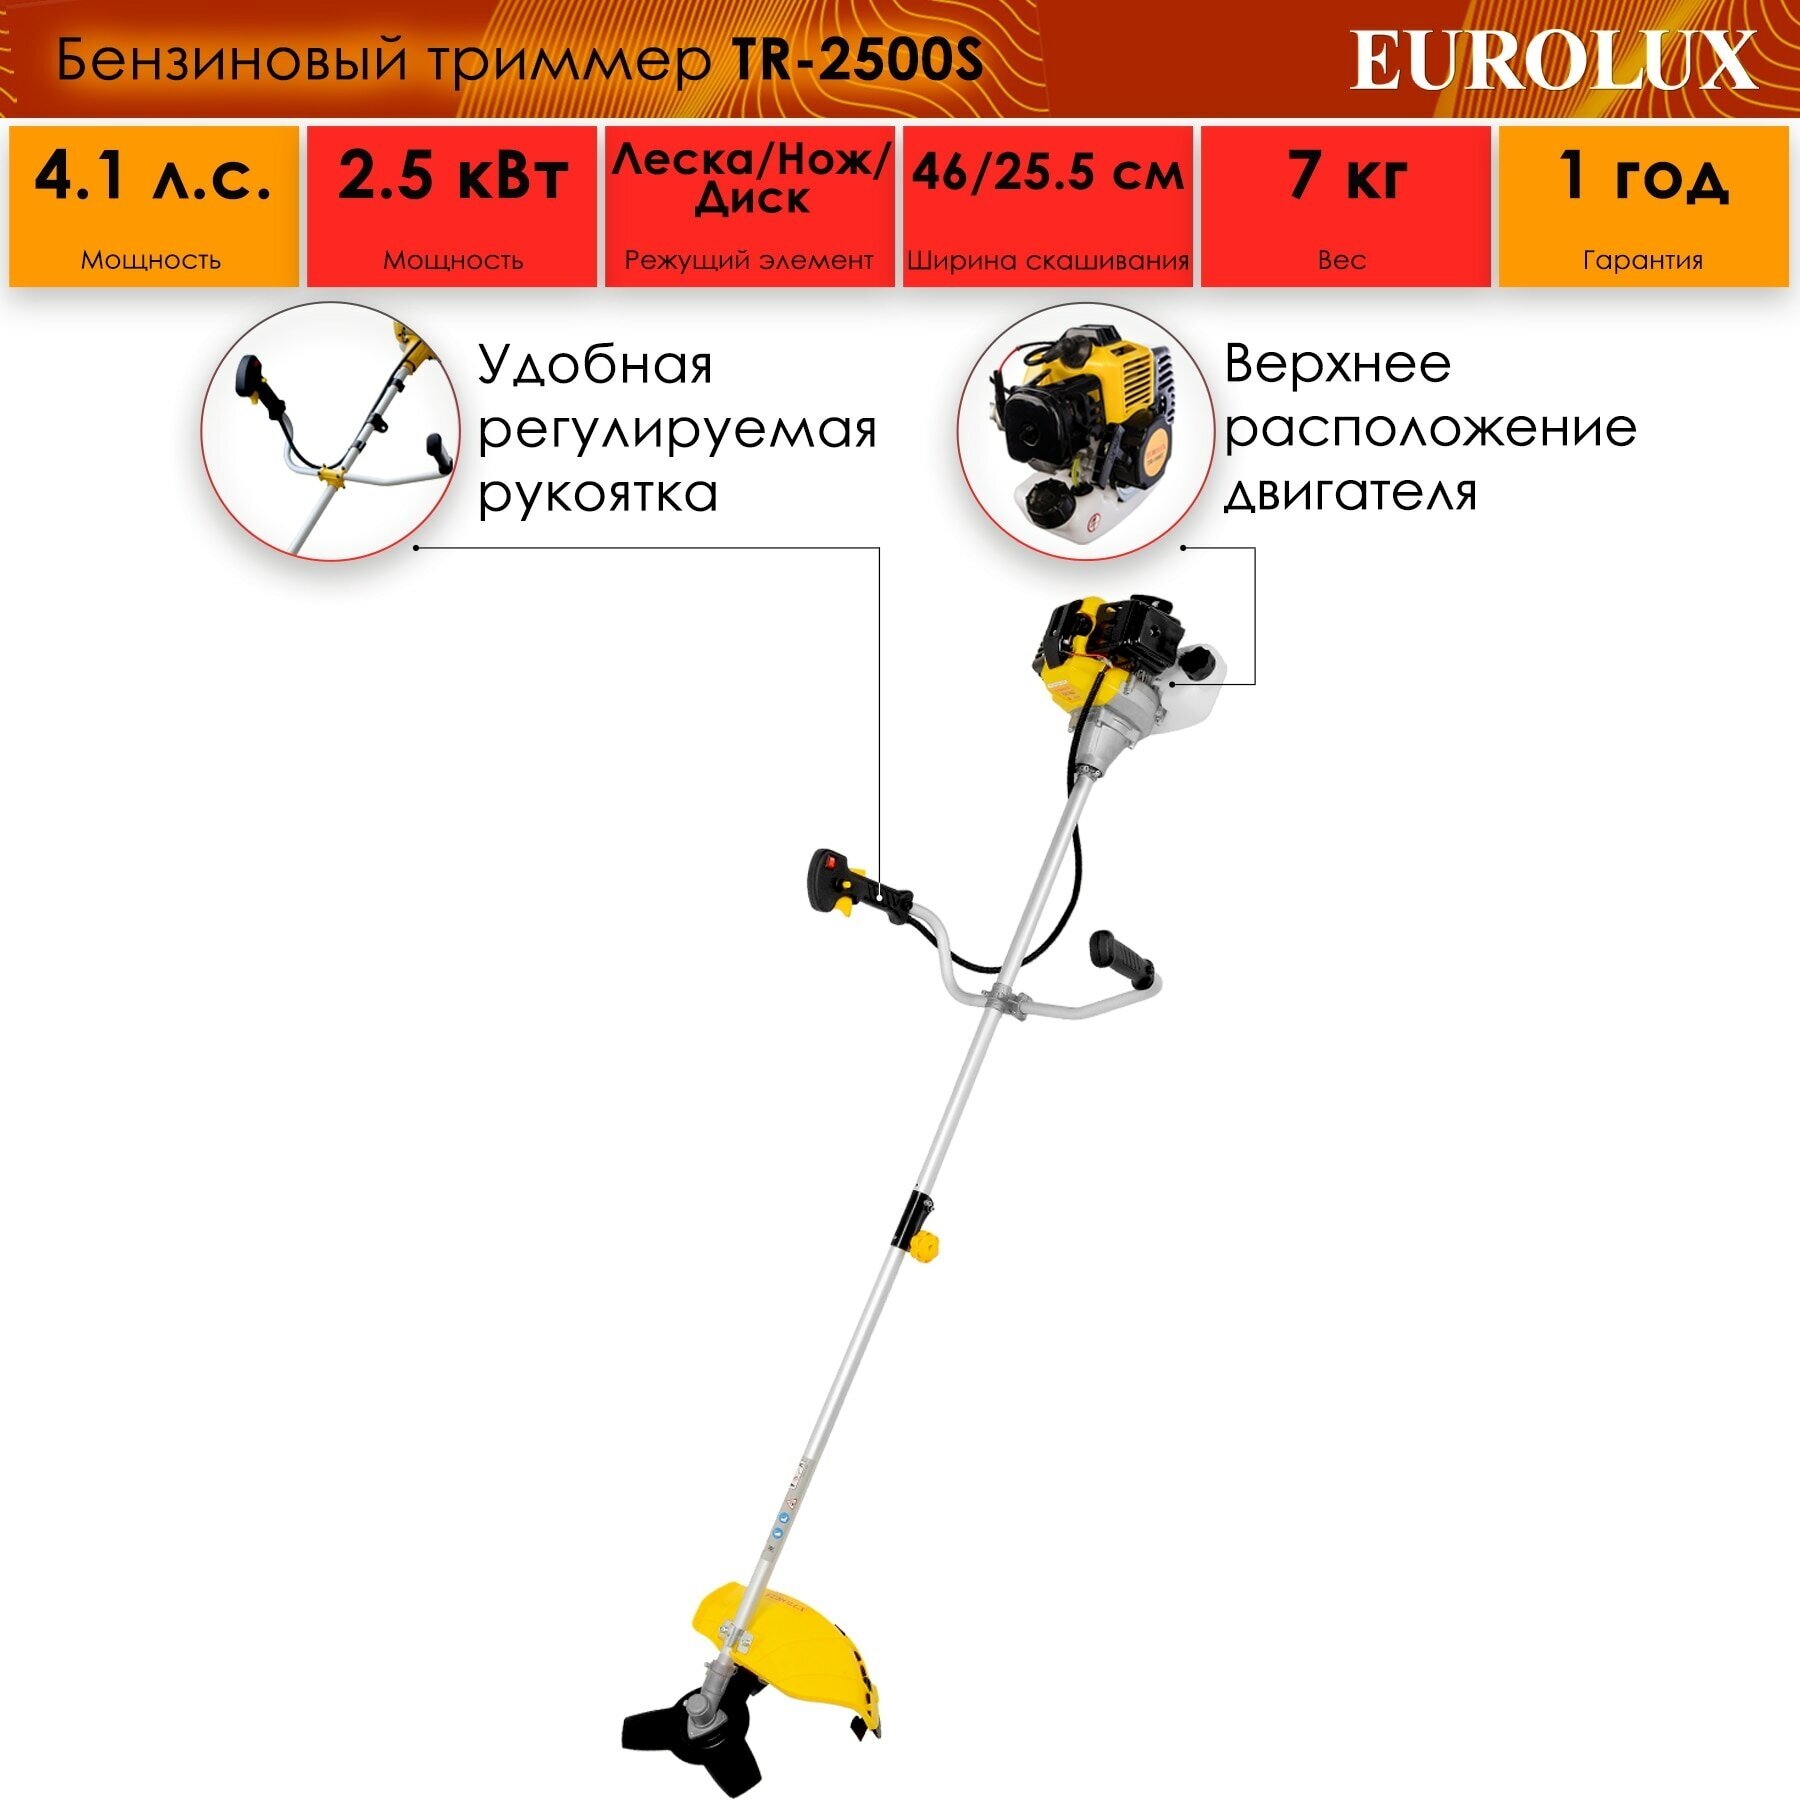 Бензиновый триммер Eurolux TR-2500S коса 3000 Вт 9500±500 об/мин леска 460 мм нож 255 мм